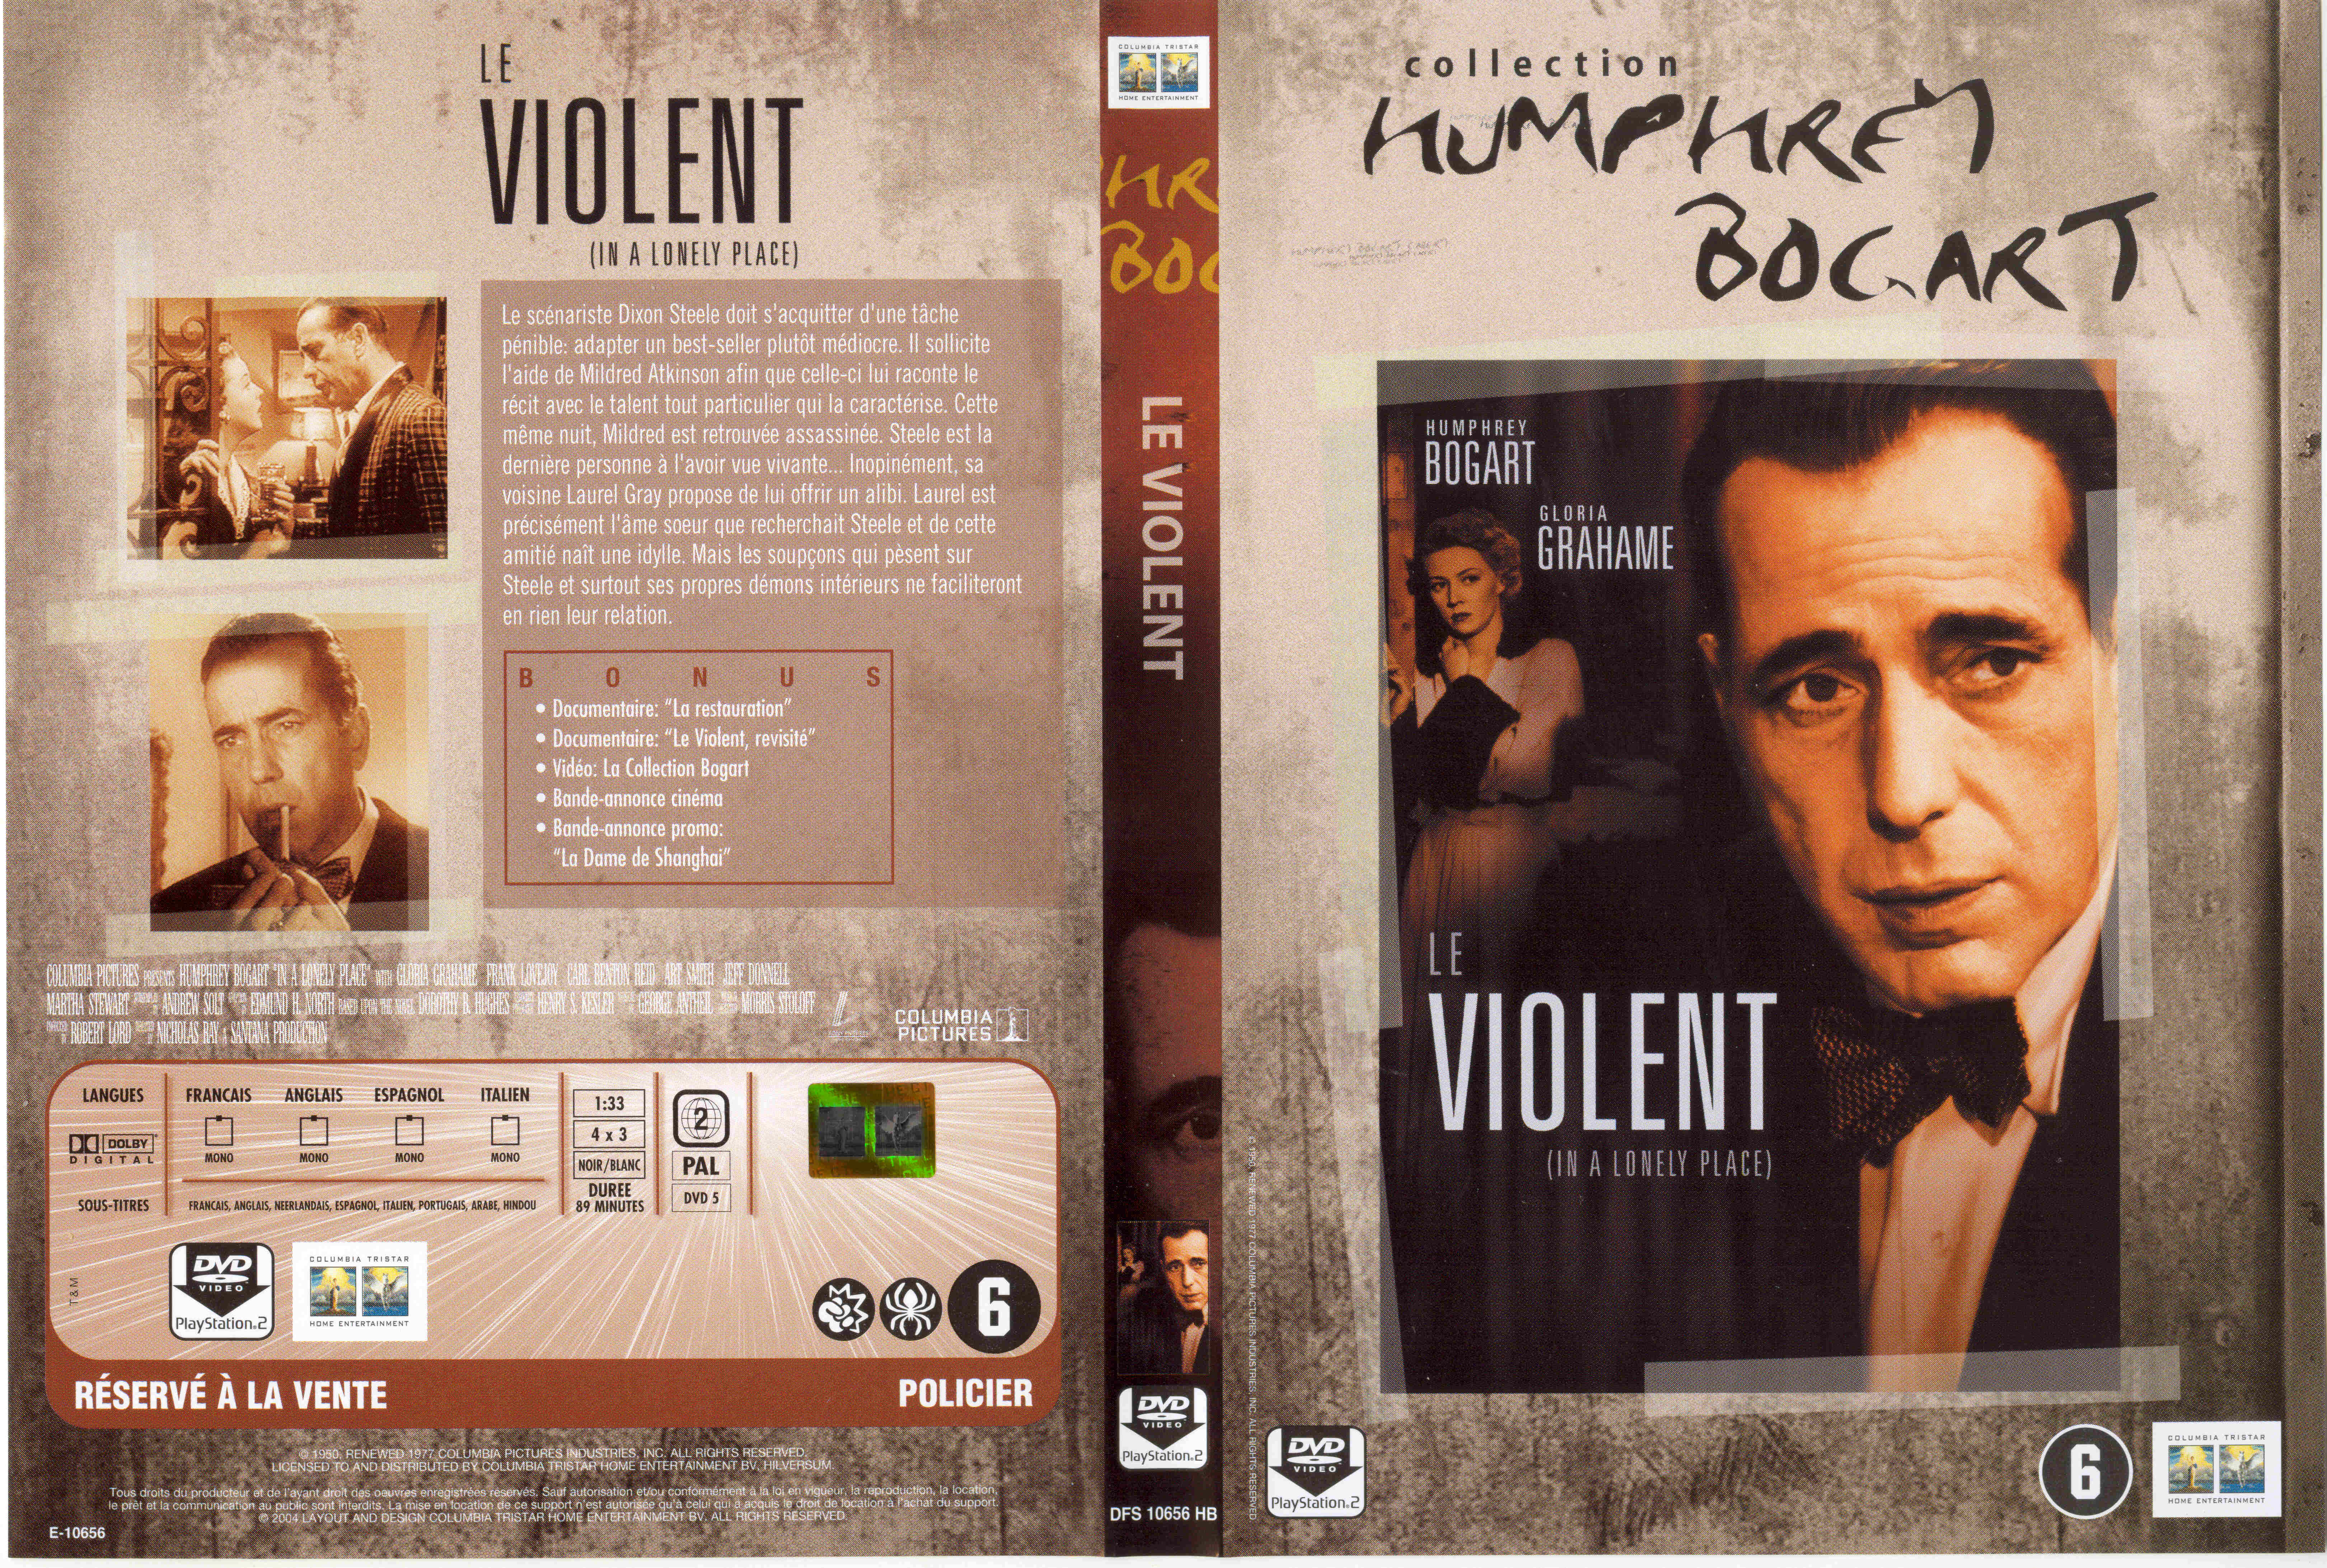 Jaquette DVD Le violent